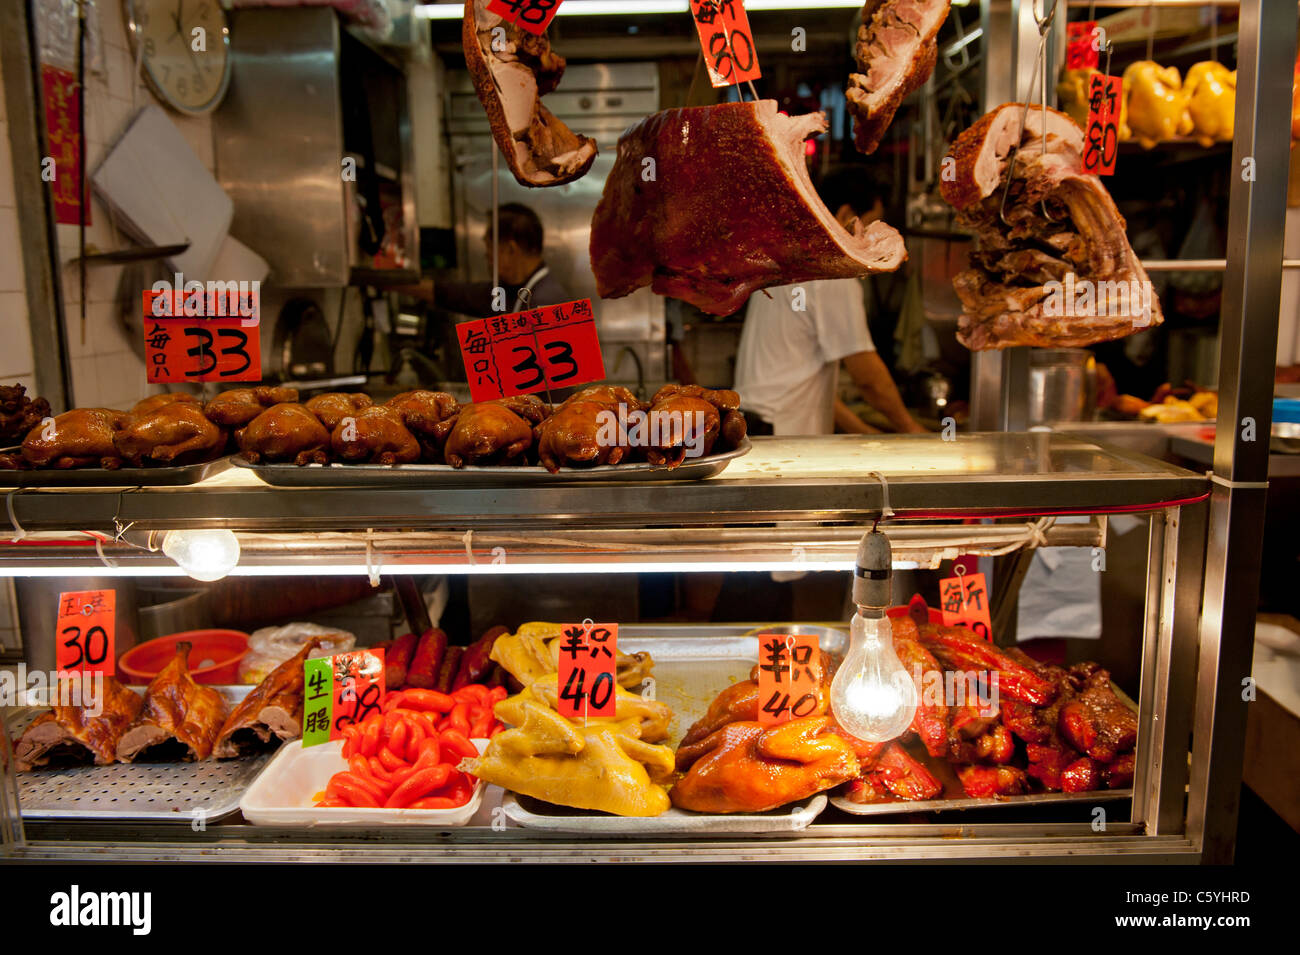 Décrochage du marché local avec le canard, la volaille et des grillades de porc chinois dans la région de Tung Choi Street Mong Kok, Kowloon, Hong Kong Banque D'Images